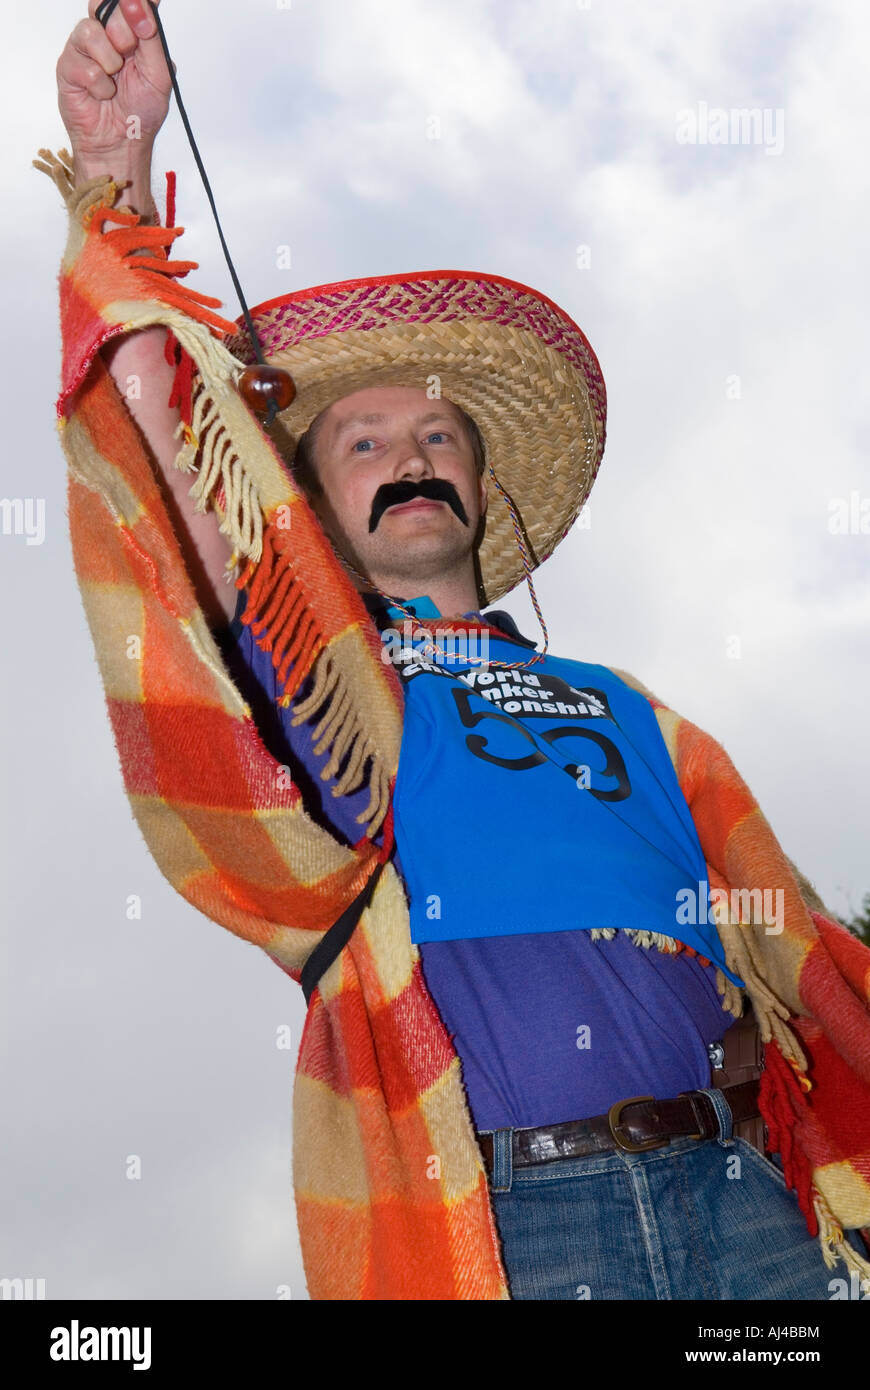 Uomo vestito come un messicano al mondo Campionato Conker Foto Stock